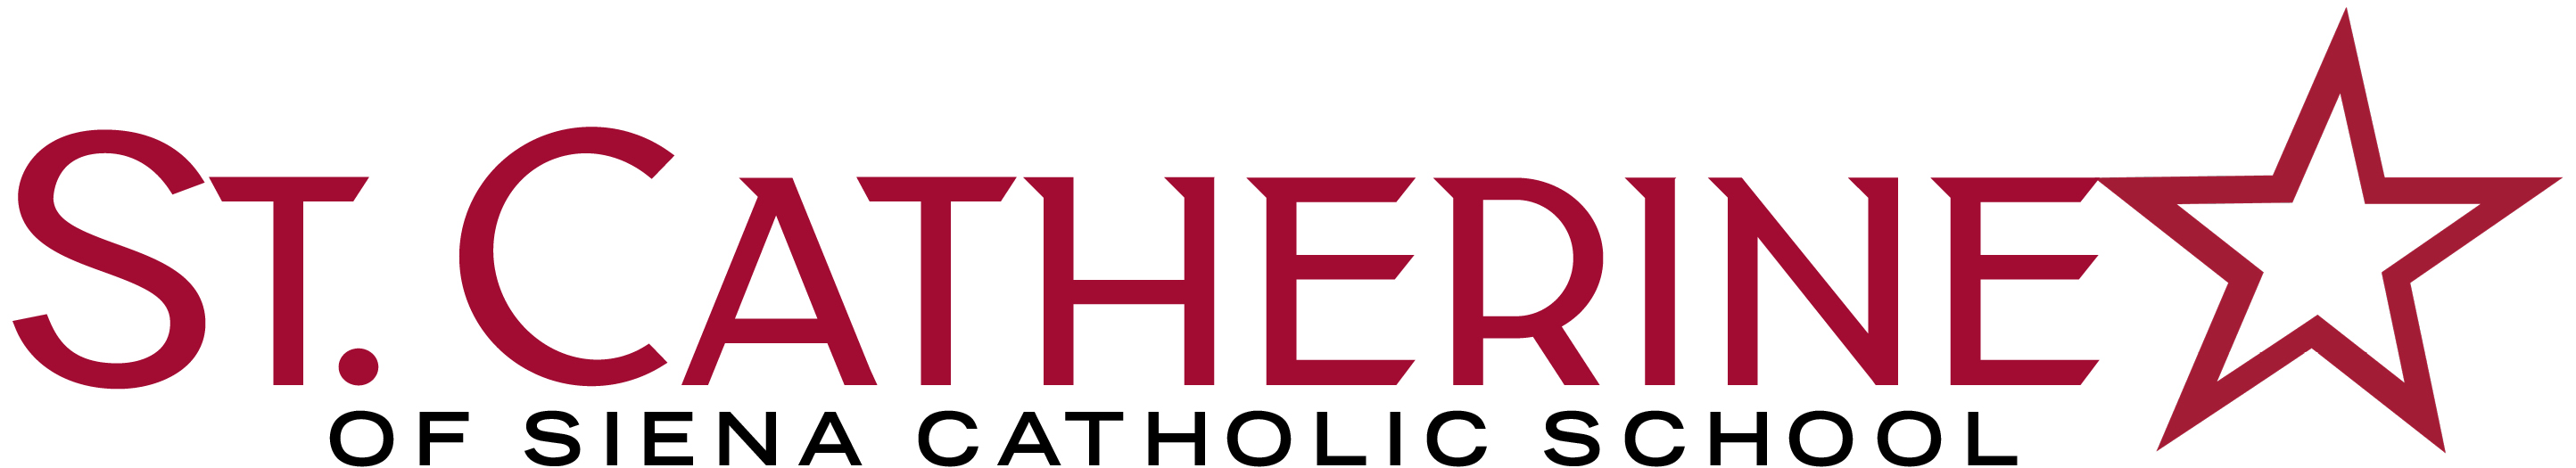 St Catherine of Siena School logo logo